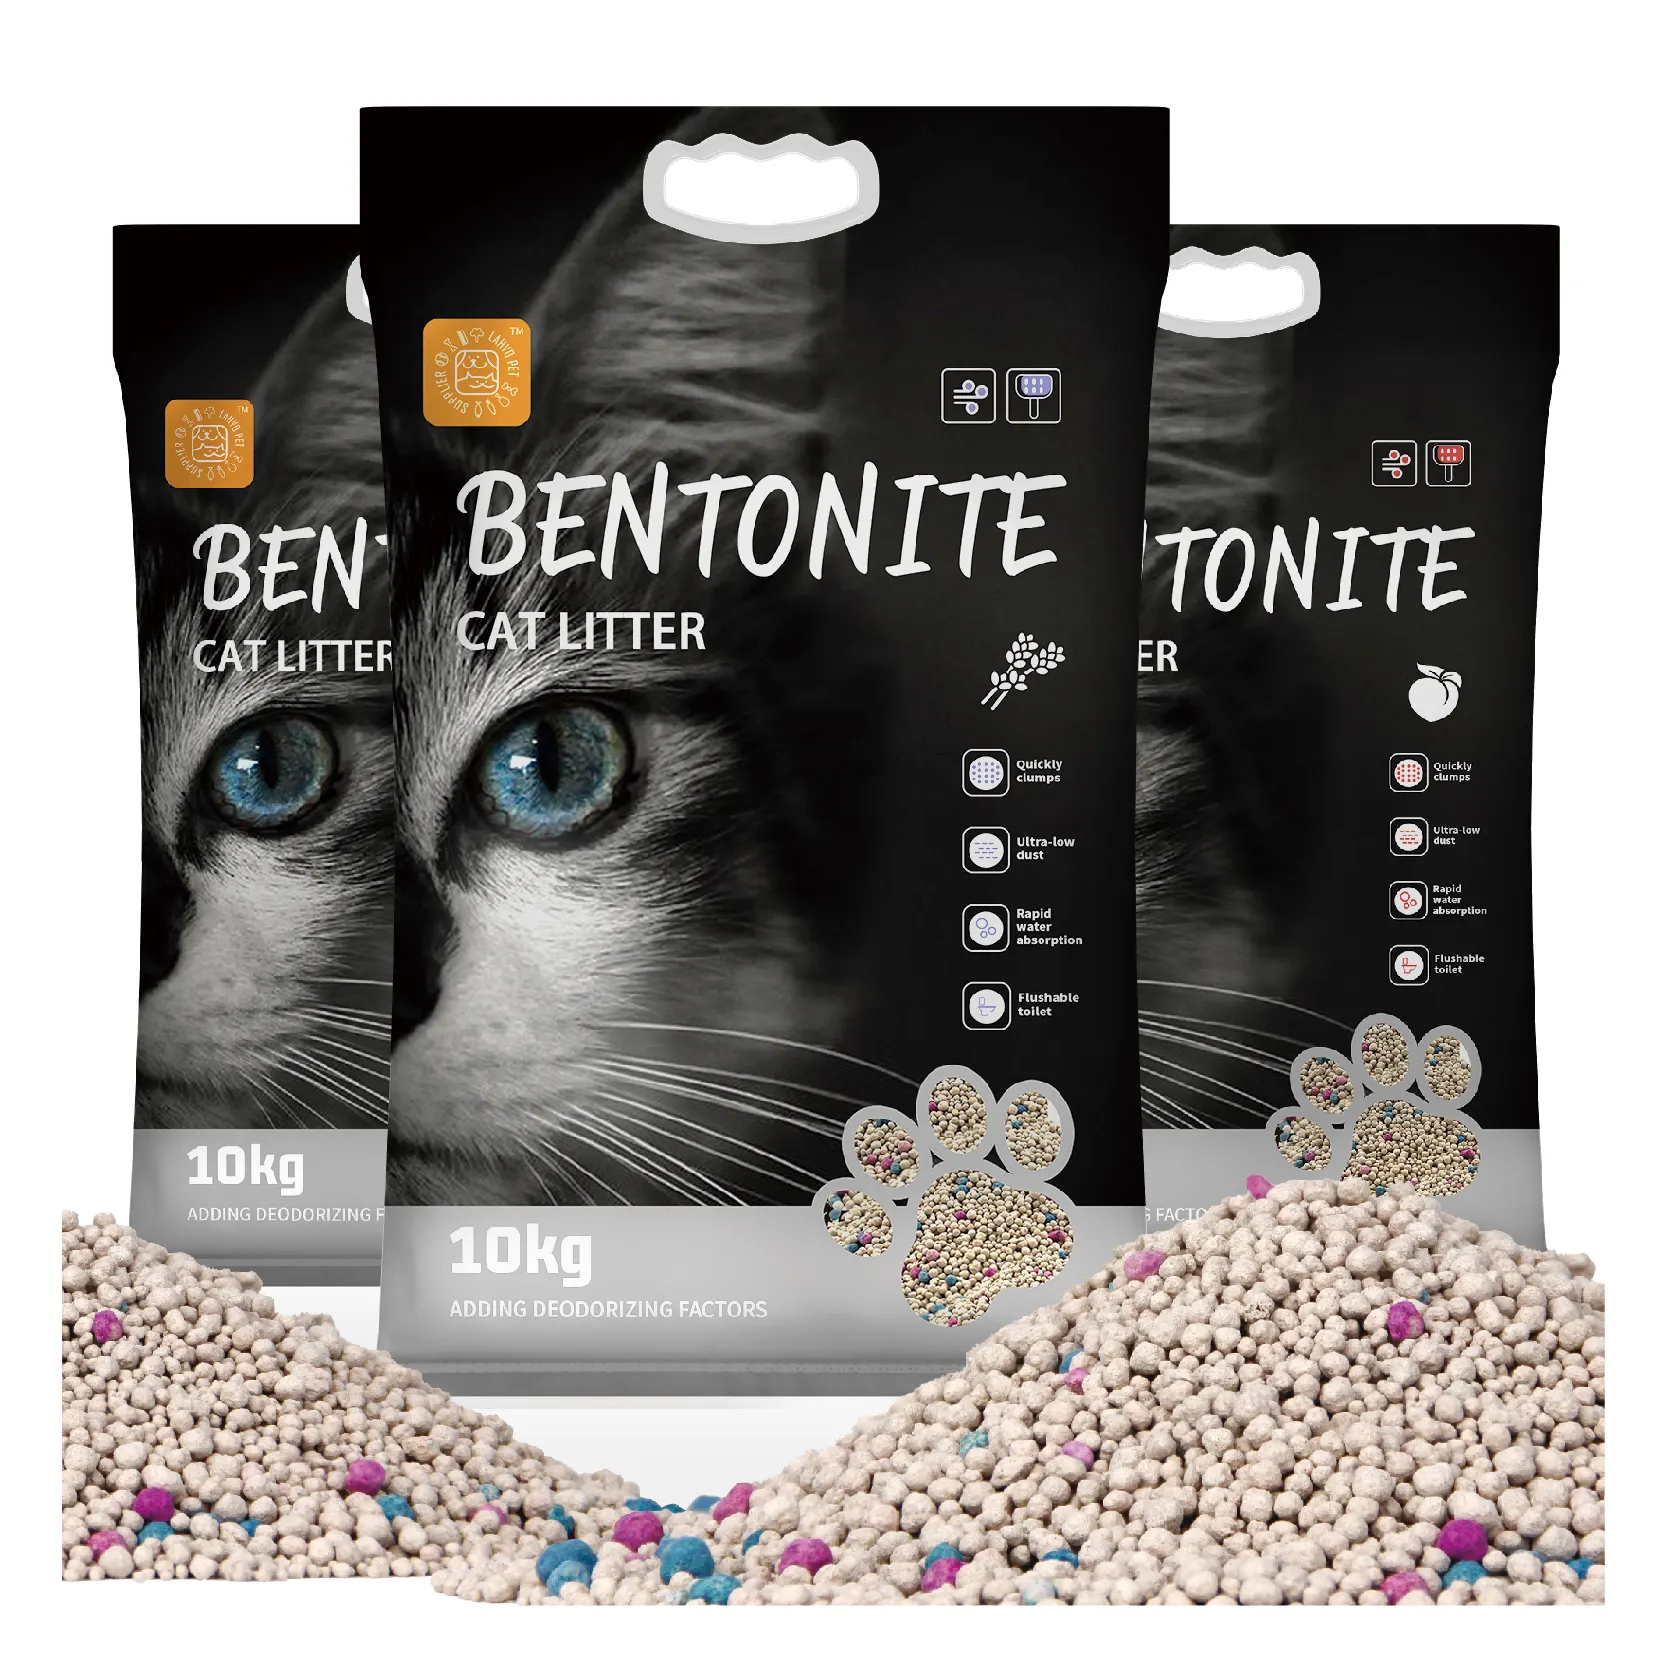 لوازم القمامة: المنتجات الأكثر مبيعًا بالرمال لفضلات القطط من البنتونيت 5-10-20